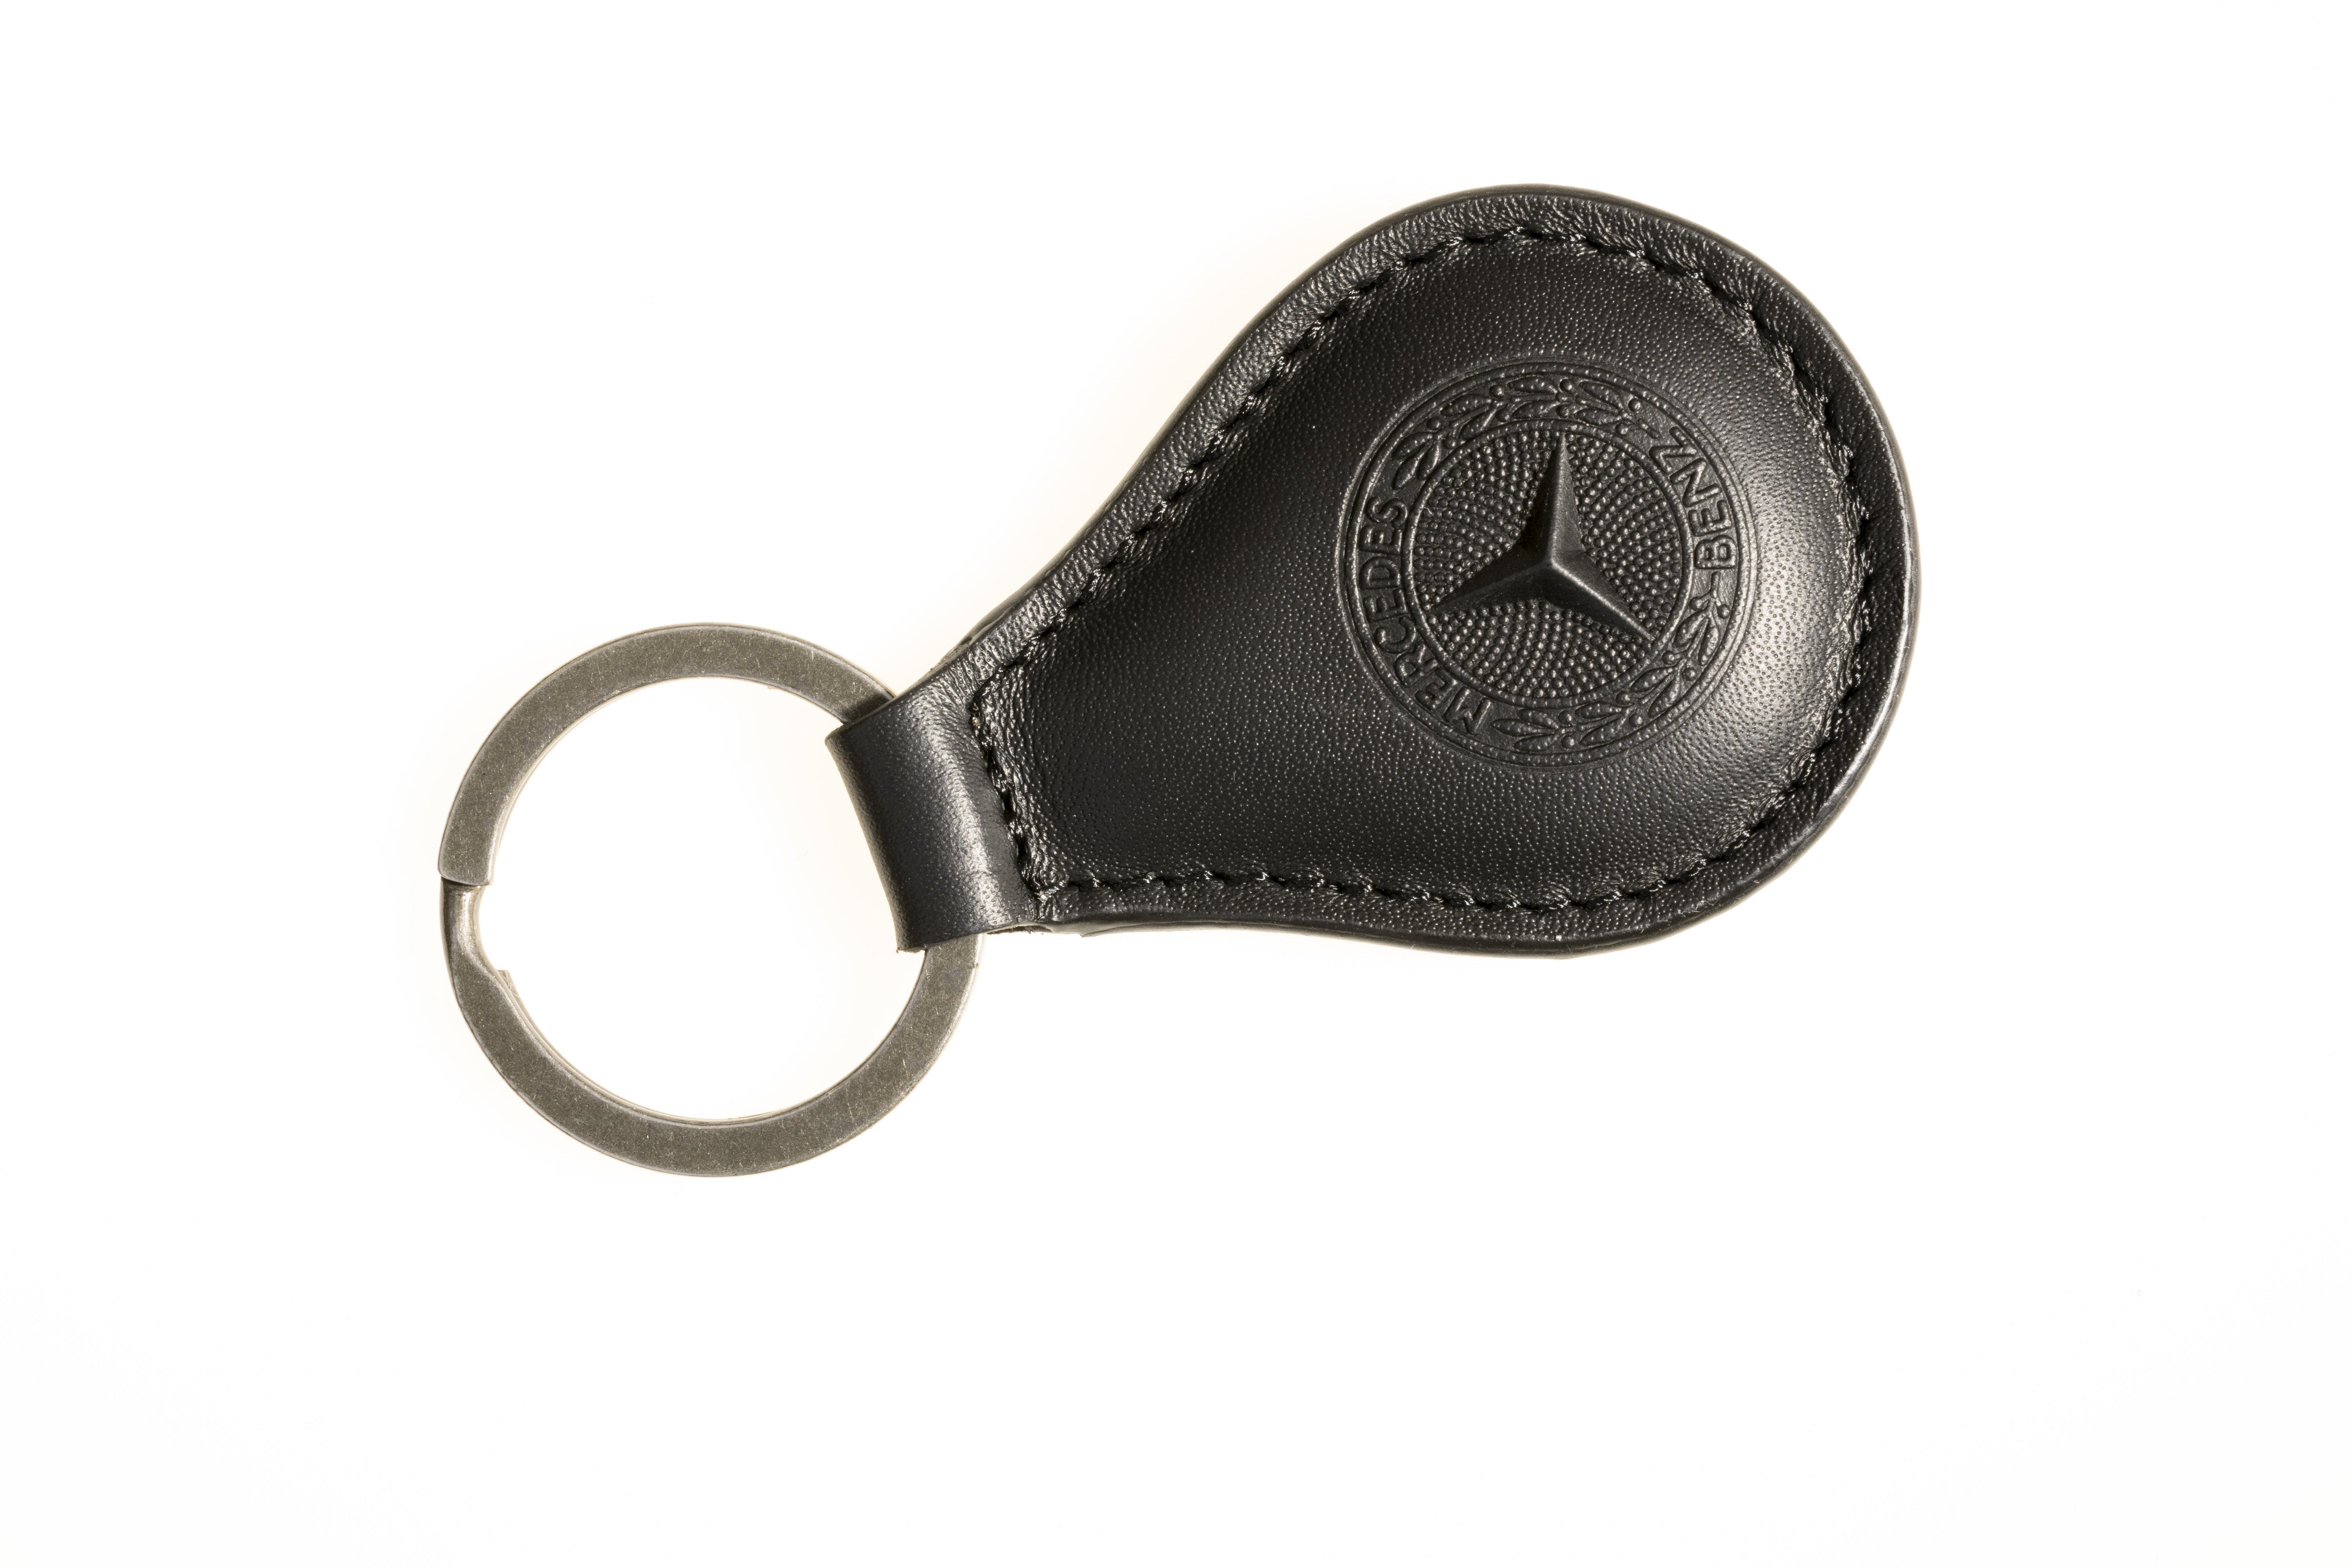 Mercedes Benz Keychain 